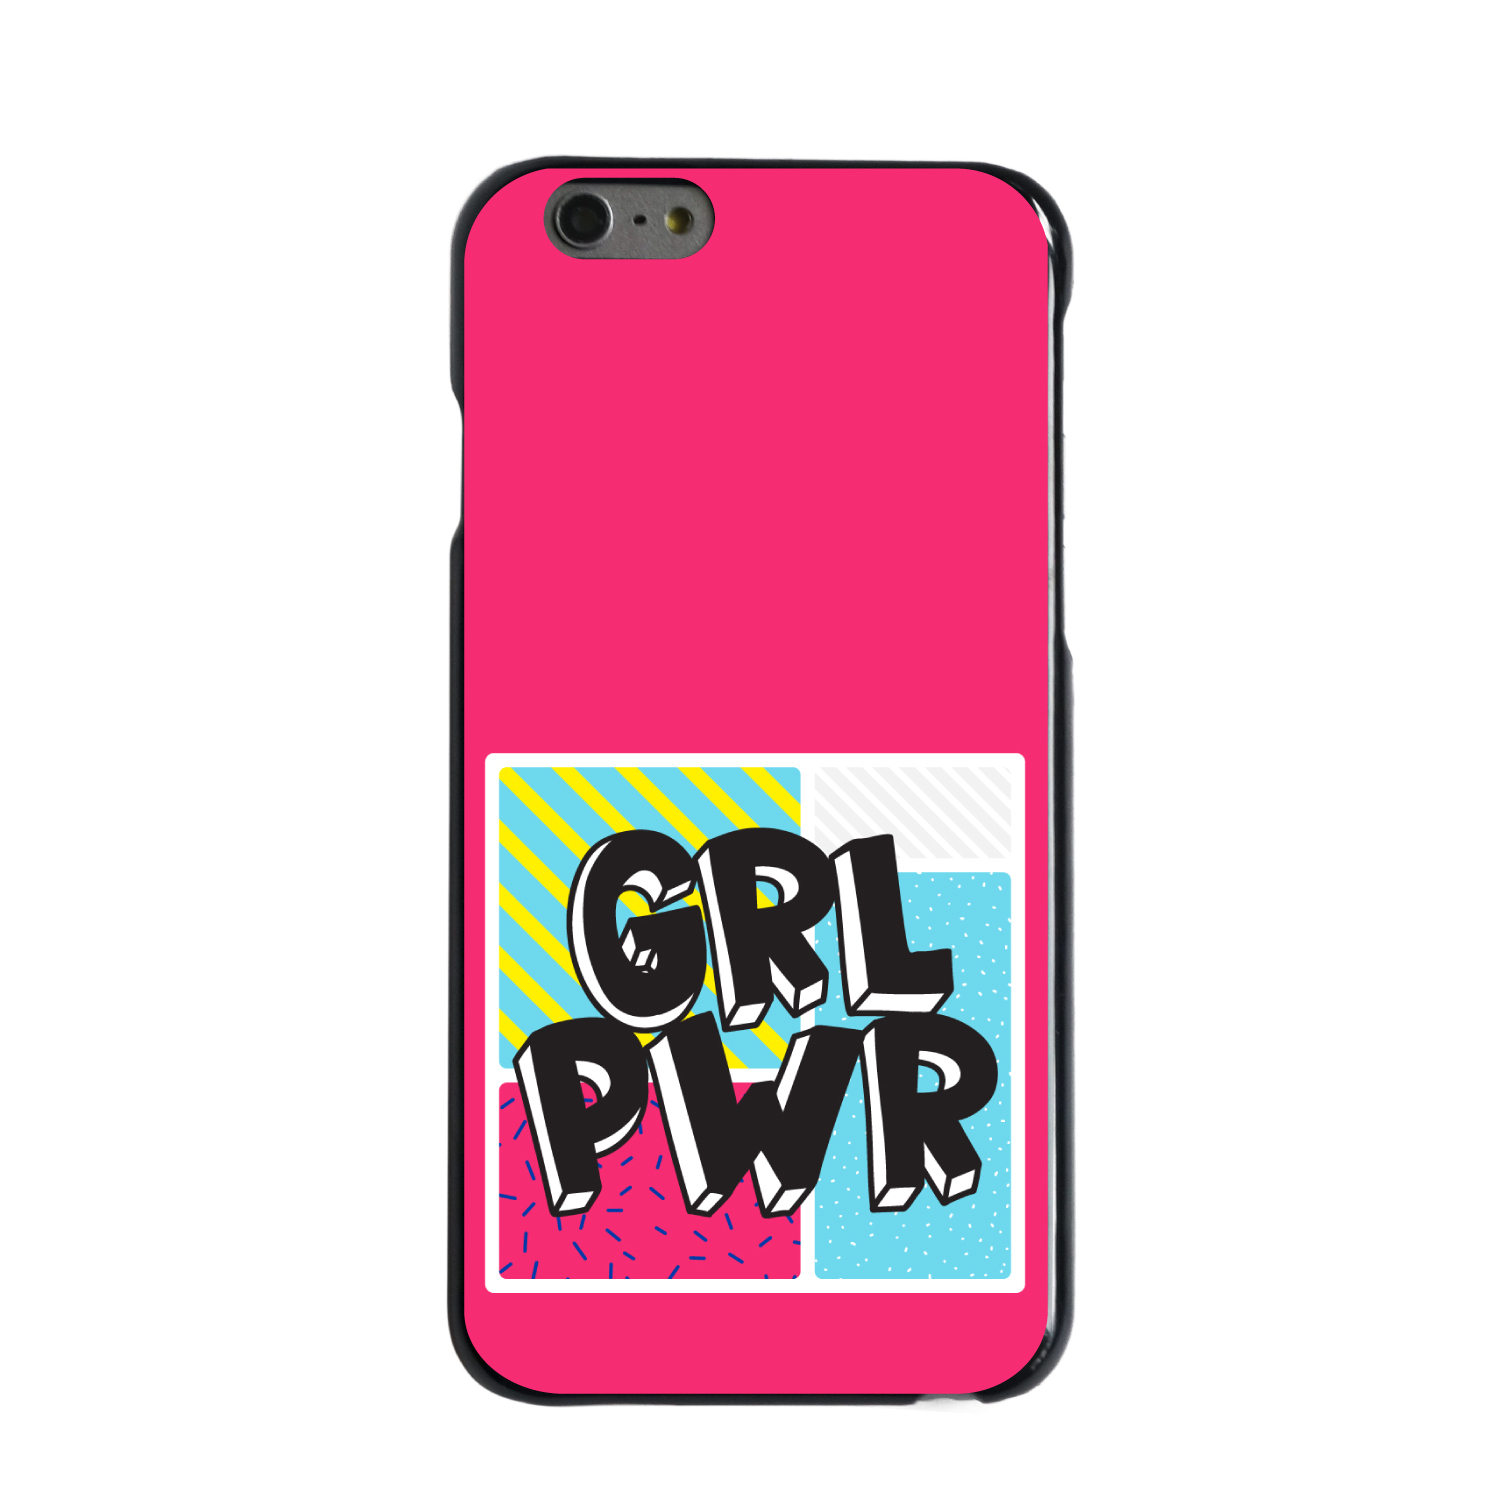 Chiếc vỏ bảo vệ iPhone/Samsung Galaxy với họa tiết GRL PWR - màu hồng sẽ làm bạn cảm thấy tự tin hơn khi sử dụng điện thoại. Mẫu thiết kế này tôn lên sứ mạng của phong trào nữ quyền và đóng góp vào sự tôn trọng giới tính. Hãy xem ngay hình ảnh để chọn cho mình chiếc vỏ bảo vệ ưng ý nhất.